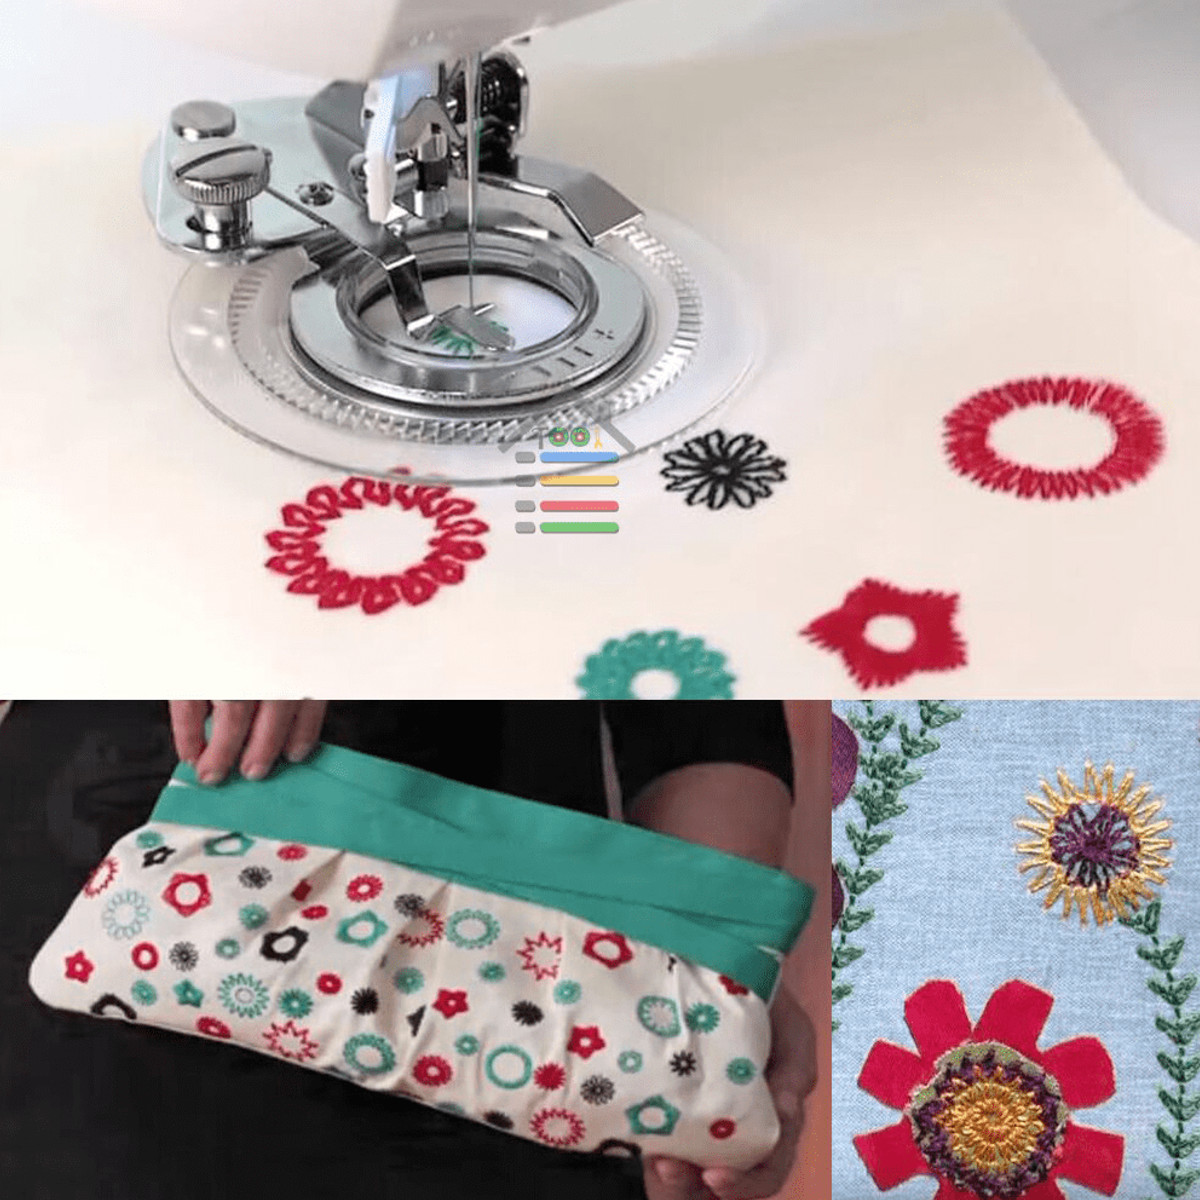 DIY-Household-Flower-Stitch-Presser-Foot-Flower-Embroidery-Presser-Feet-Sewing-Machine-Attachment-1707065